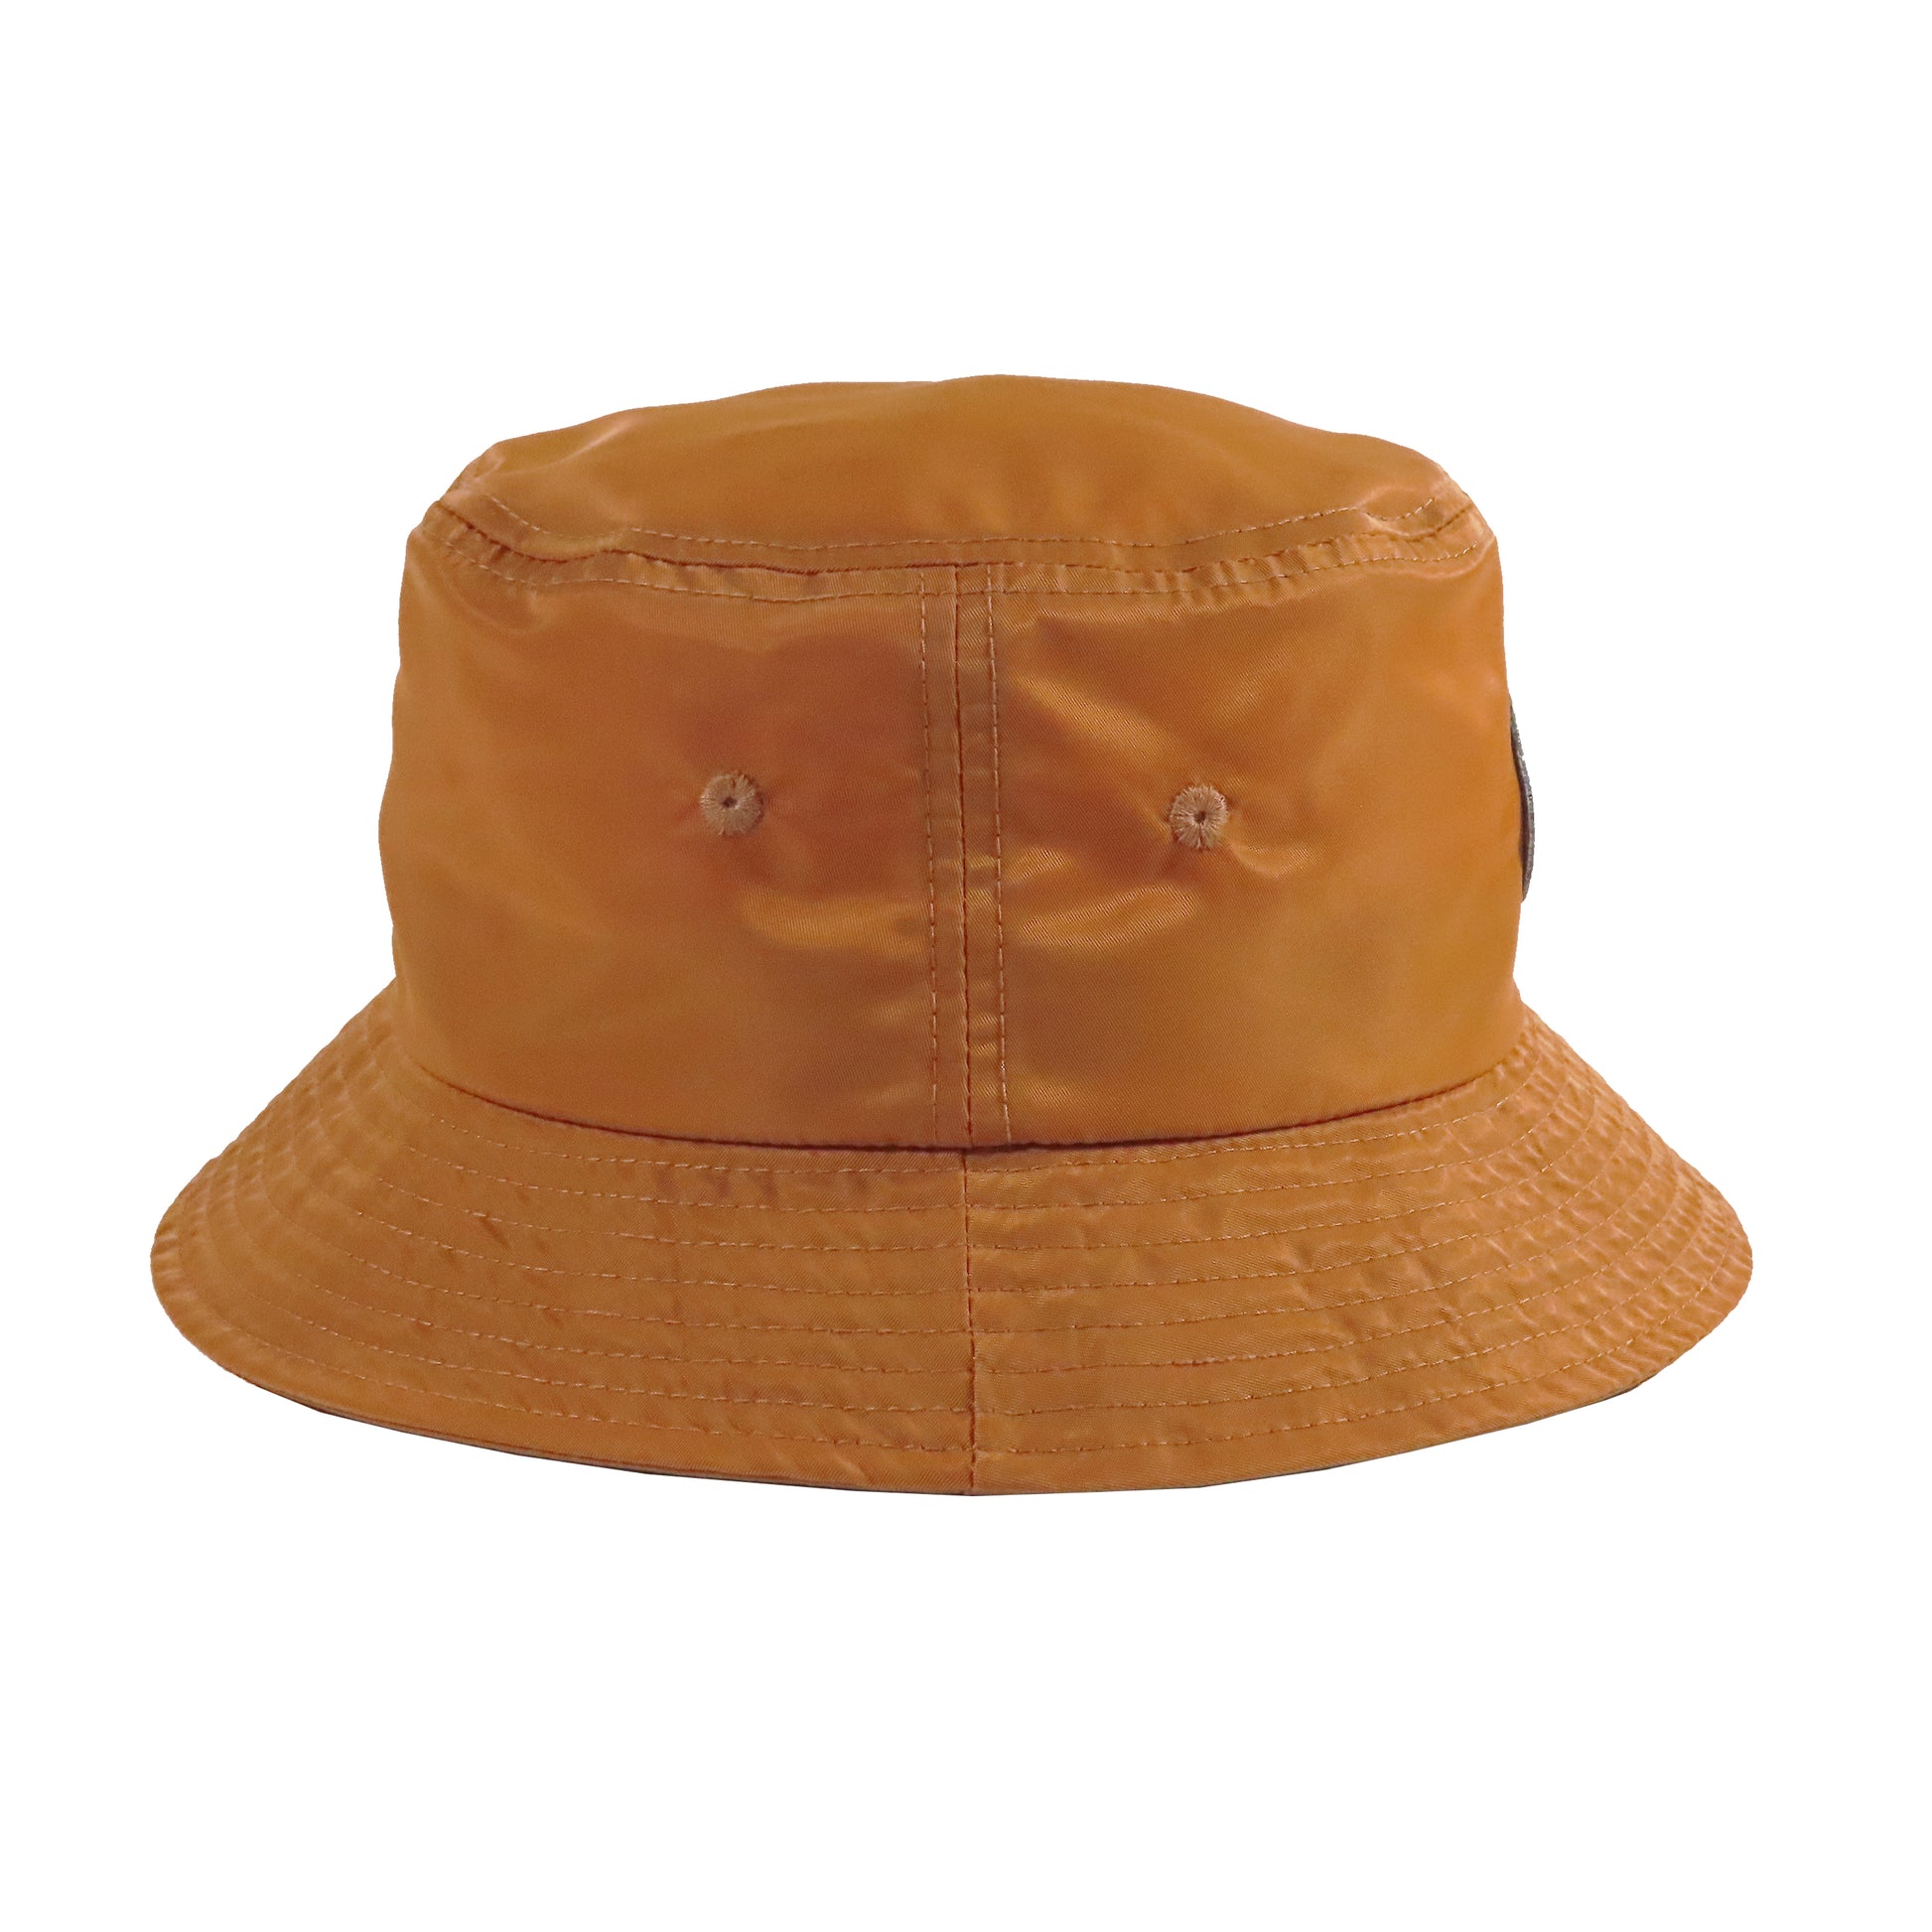 Pinner's Golf - OG Oval Patch Nylon Bucket Hat (Pinner's Gold)